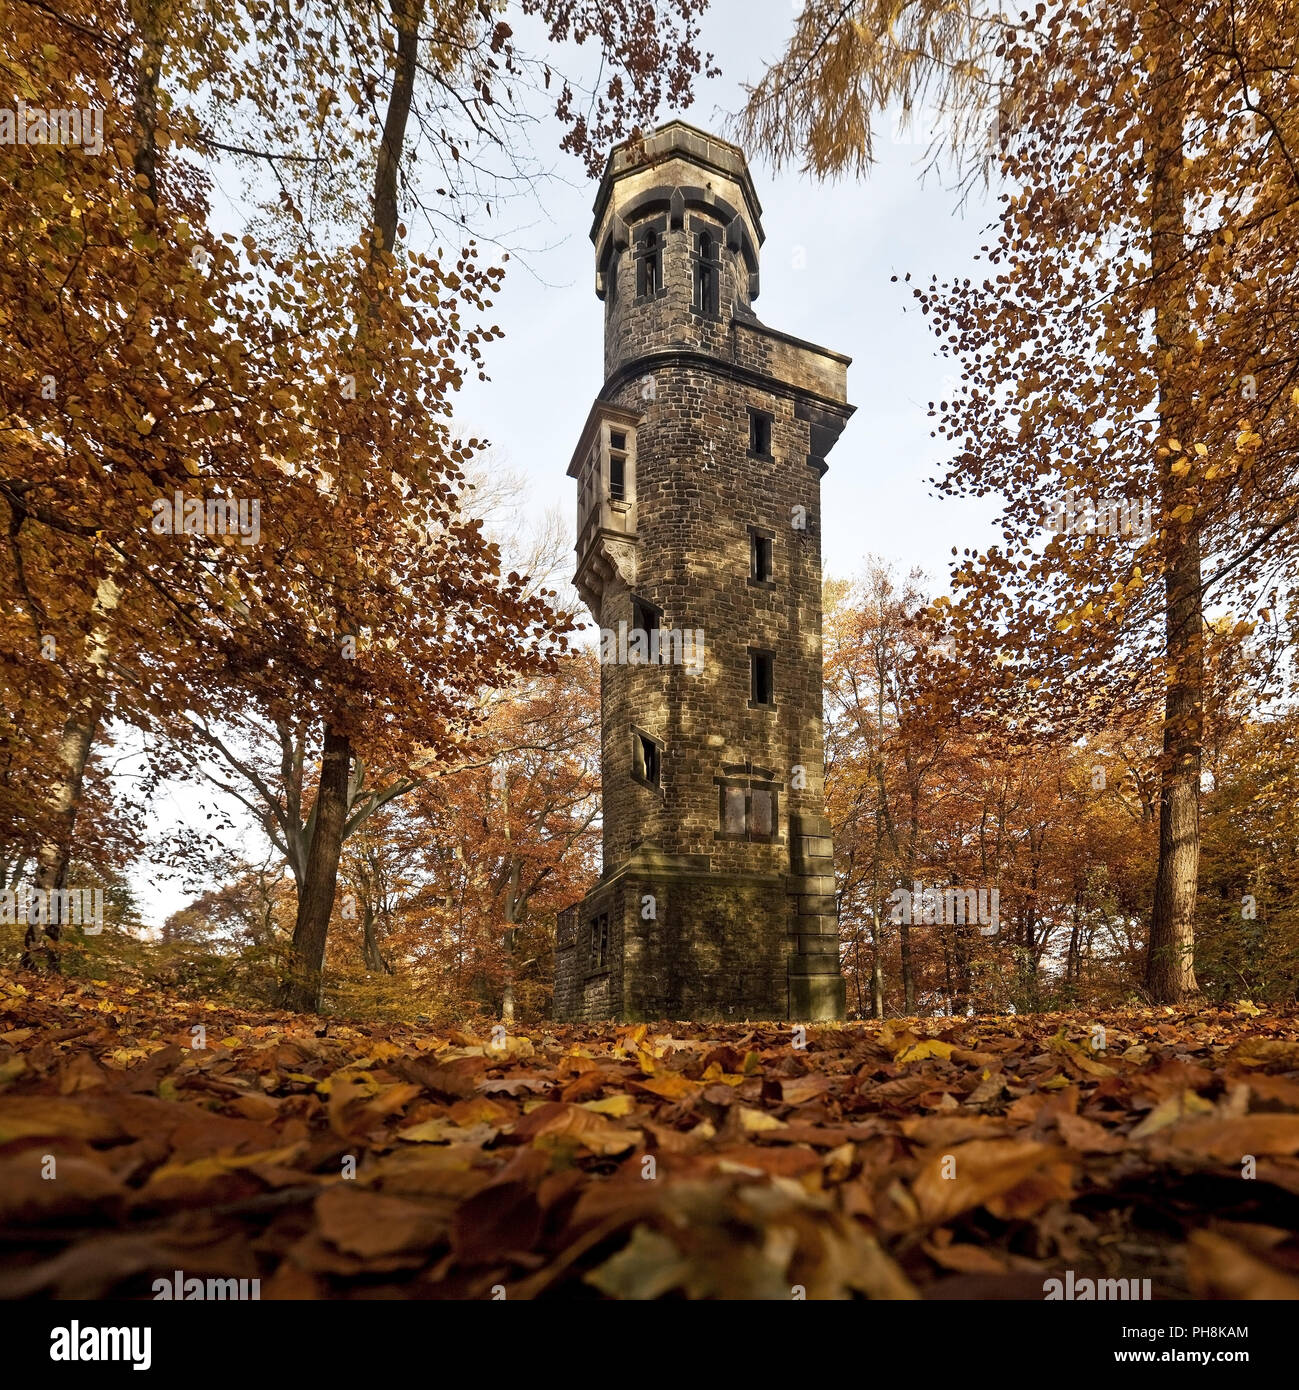 Von-der-Heydt-Turm, autumn, Wuppertal Stock Photo